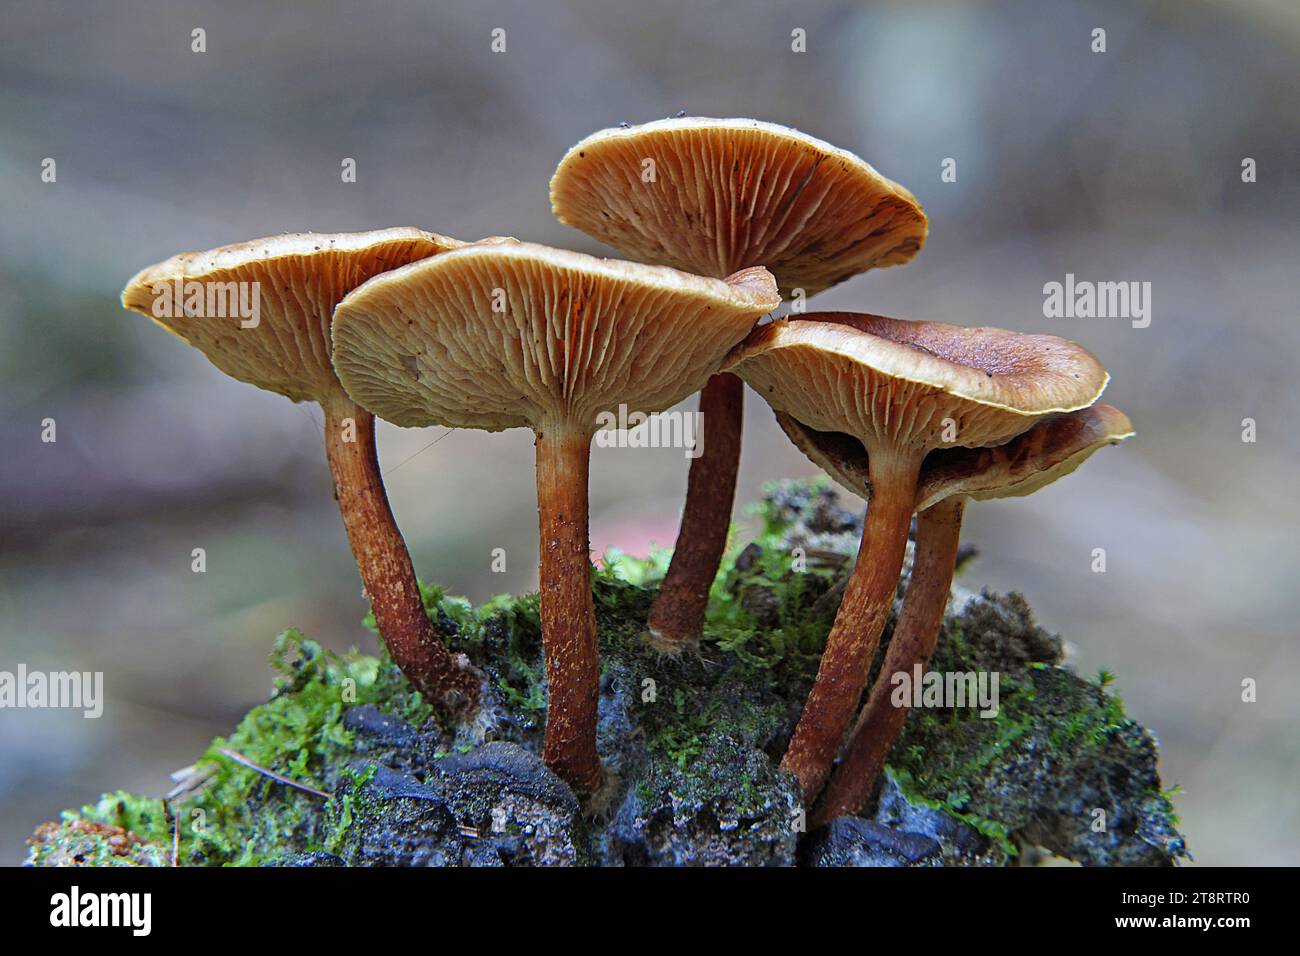 Pholiota ist eine Gattung kleiner bis mittelgroßer, fleischiger Pilze aus der Familie der Strophariaceae. Es handelt sich um Sasonden, die typischerweise auf Holz leben. Die Gattung ist vor allem in gemäßigten Regionen weit verbreitet und enthält etwa 150 Arten Stockfoto